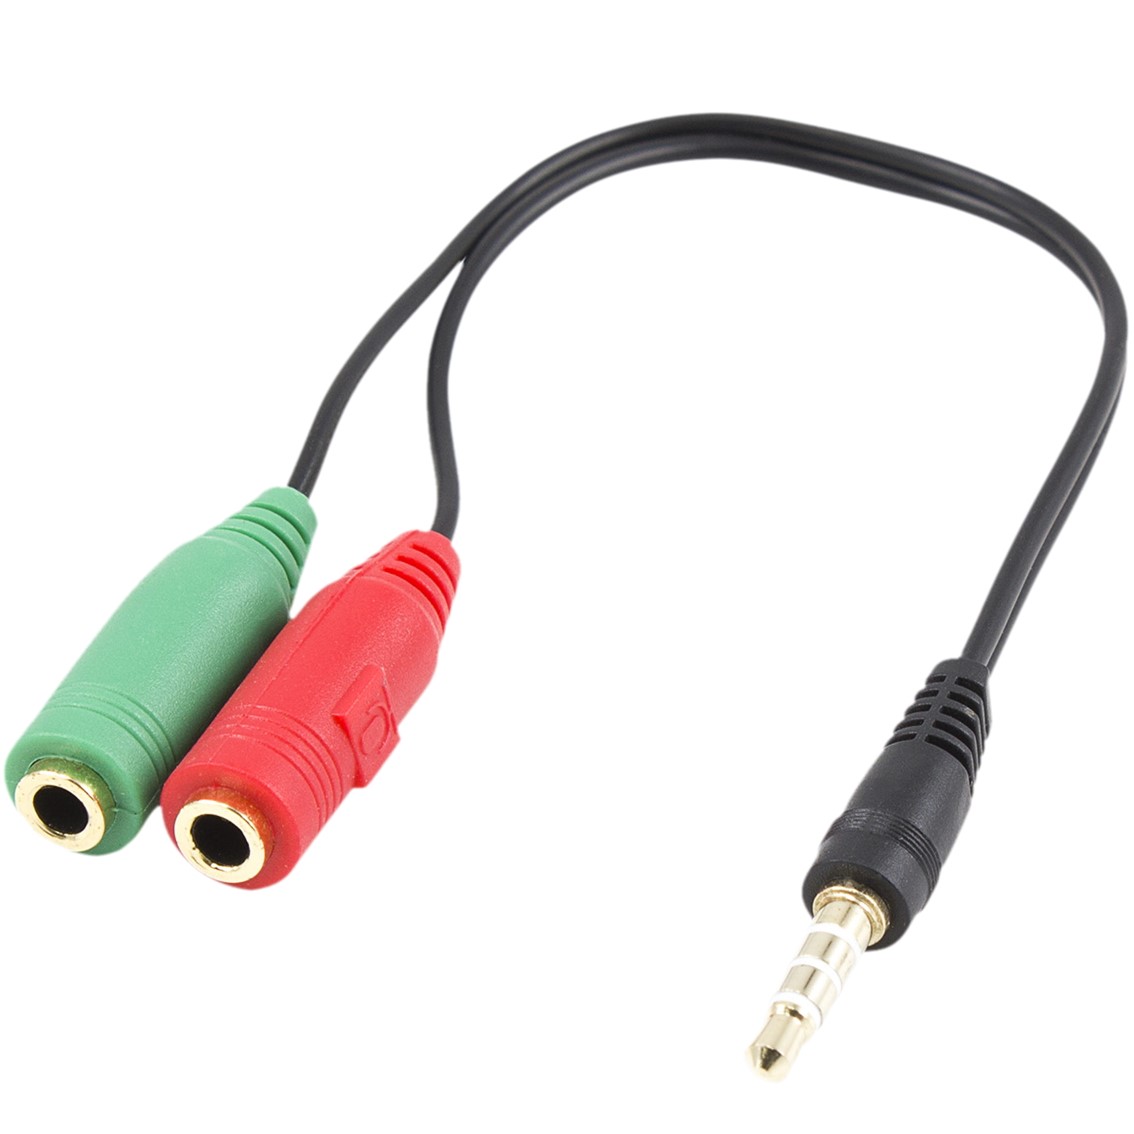 Cable adaptador de audio ewent jack 3.5mm macho a jack 3.5mm hembra x2 negro 0.15m